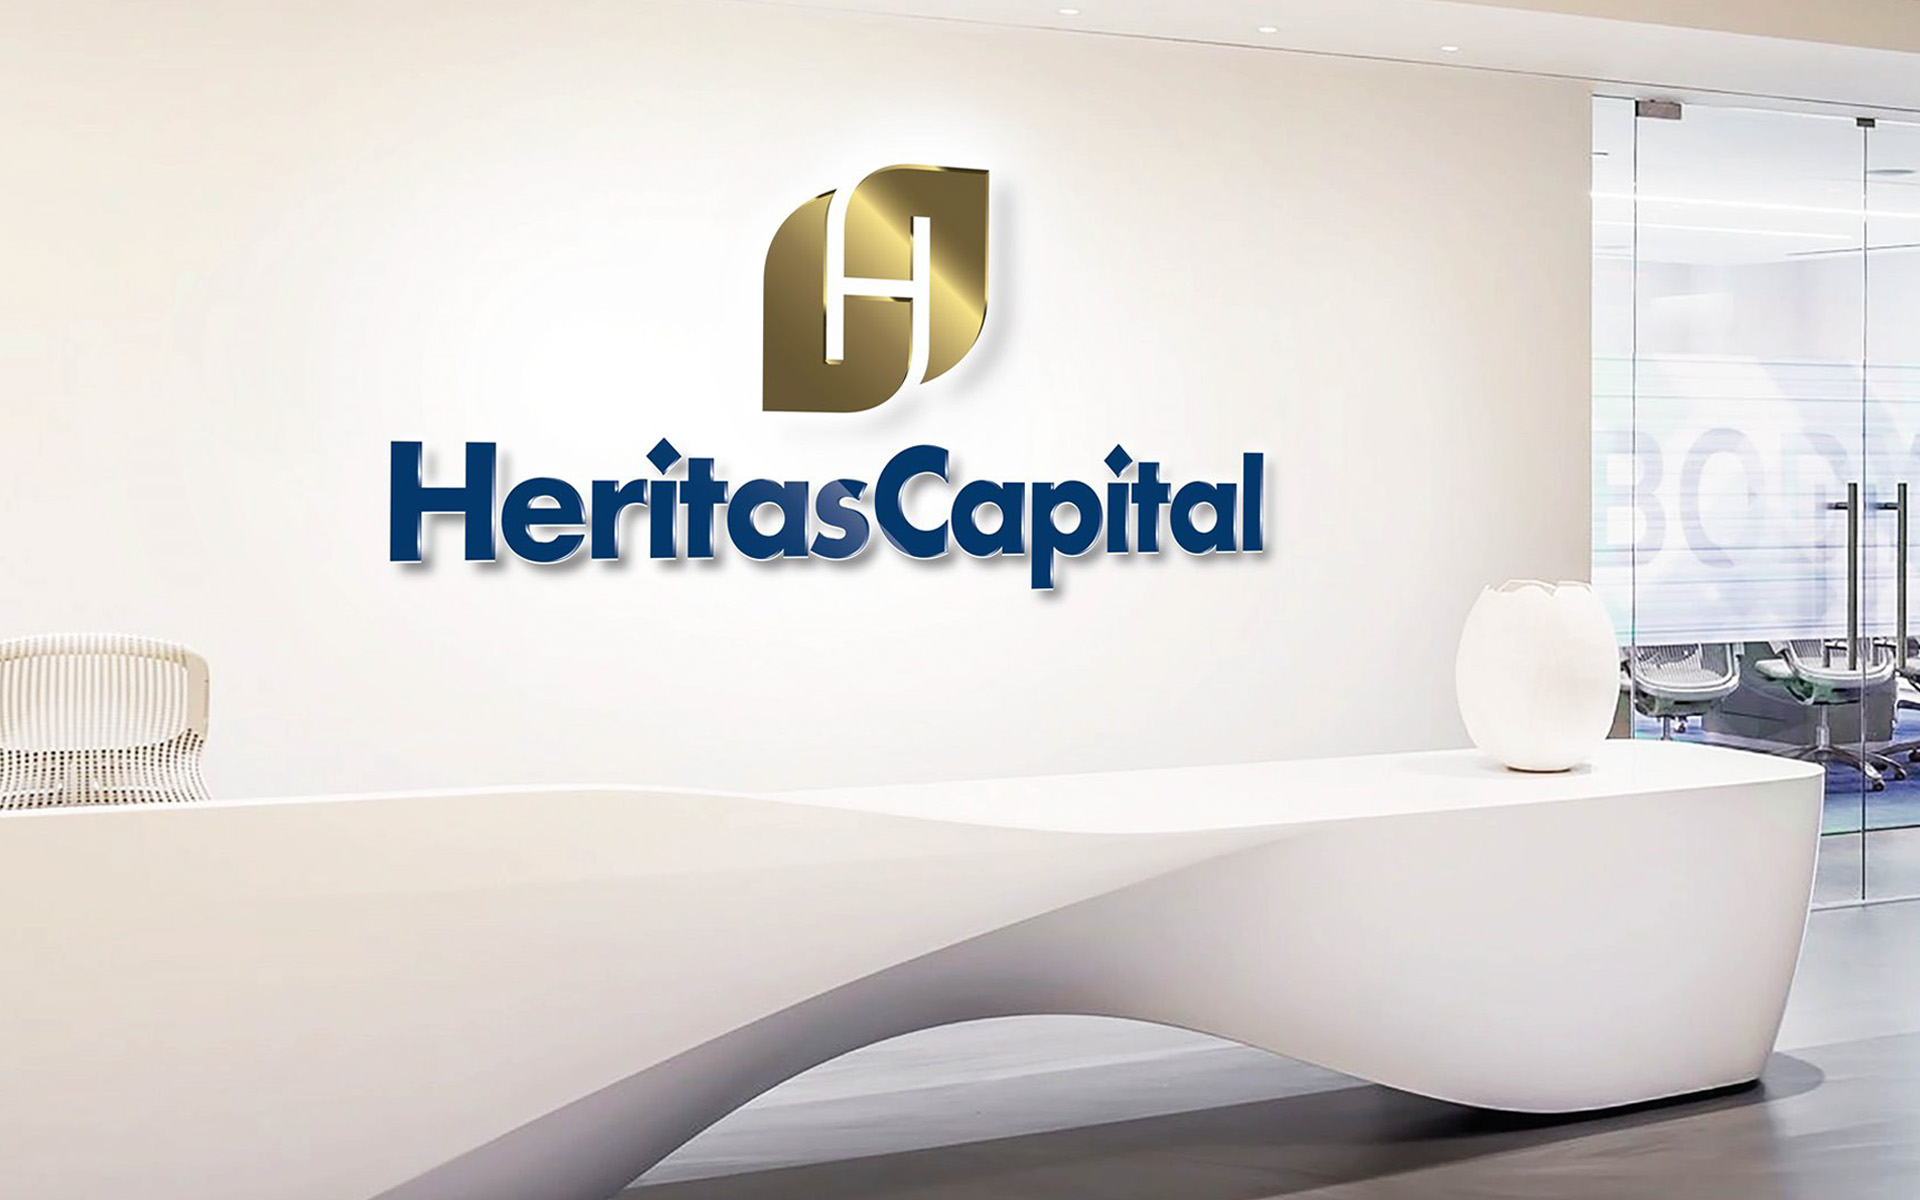 Heritas Capital